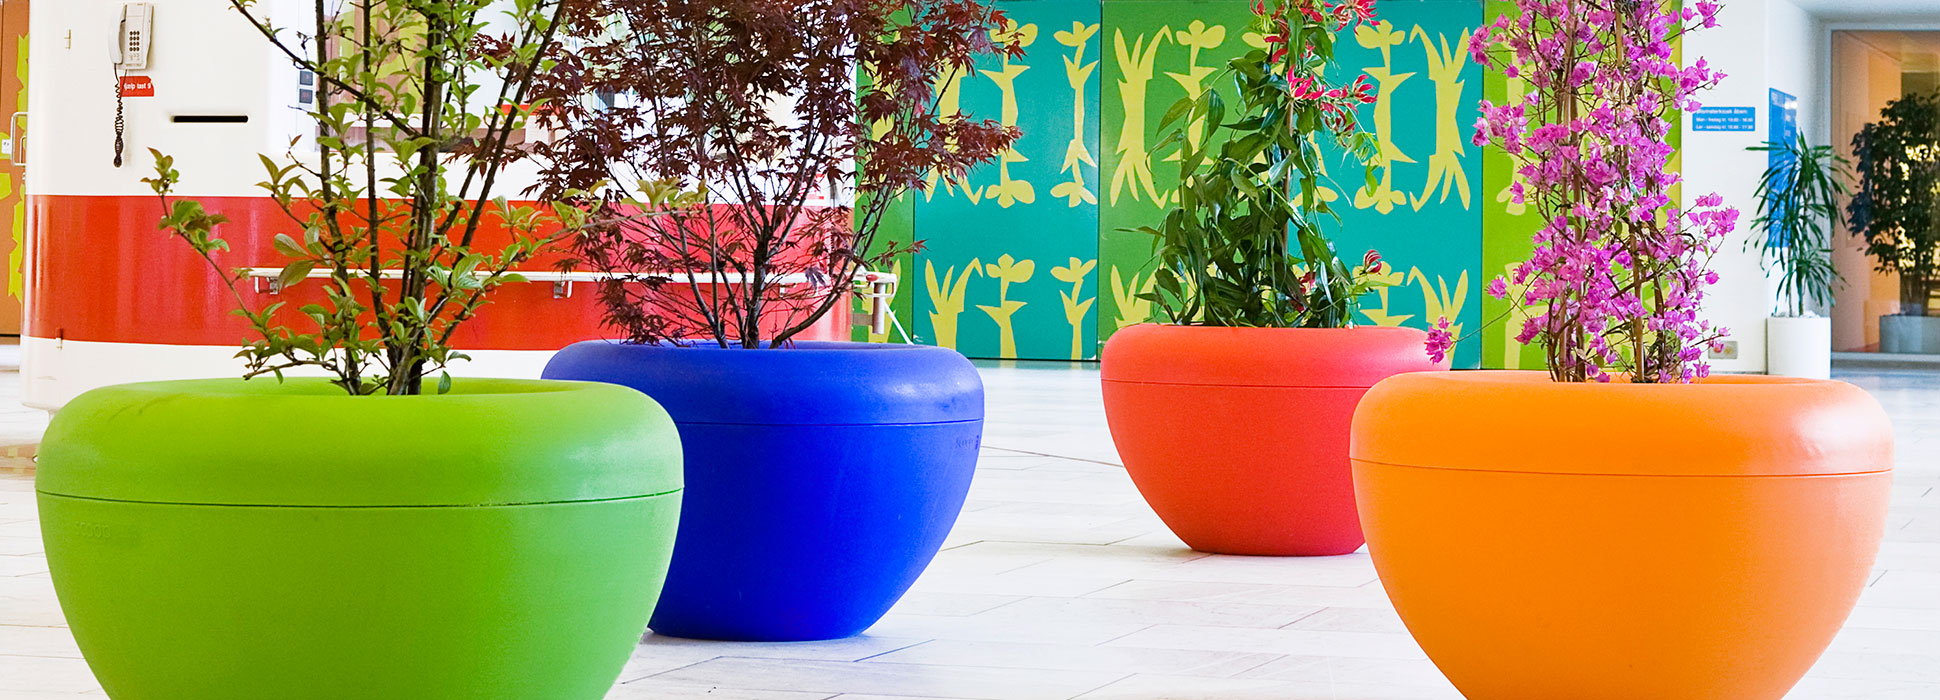 Scoop plantenbak voor een kleurrijke en vrolijke binnenruimte